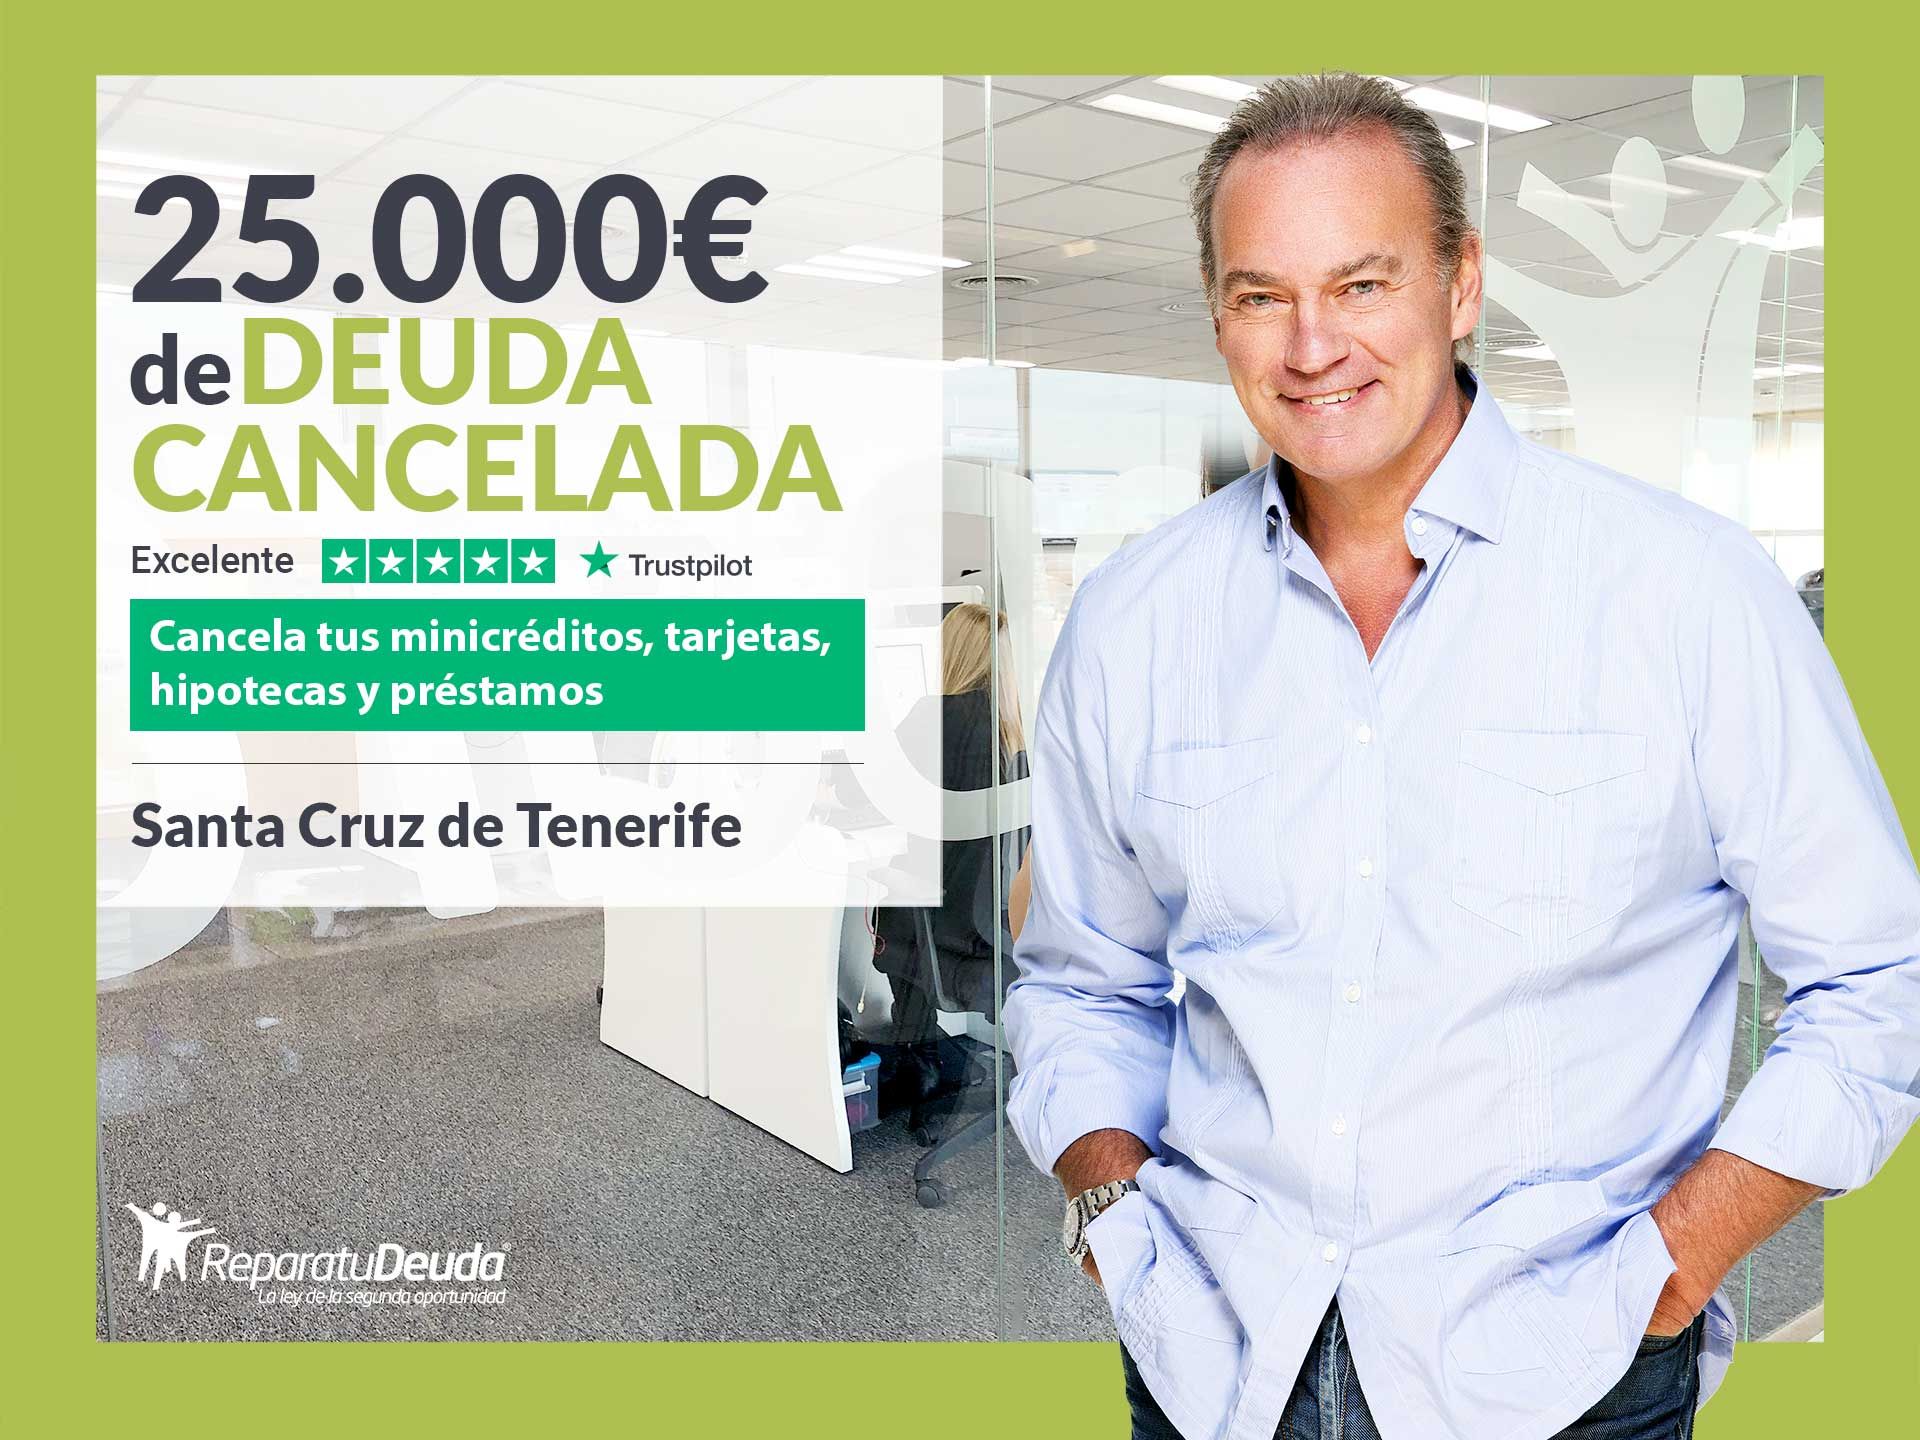 Repara tu Deuda Abogados cancela 25.000? en  Tenerife (Canarias) con la Ley de Segunda Oportunidad